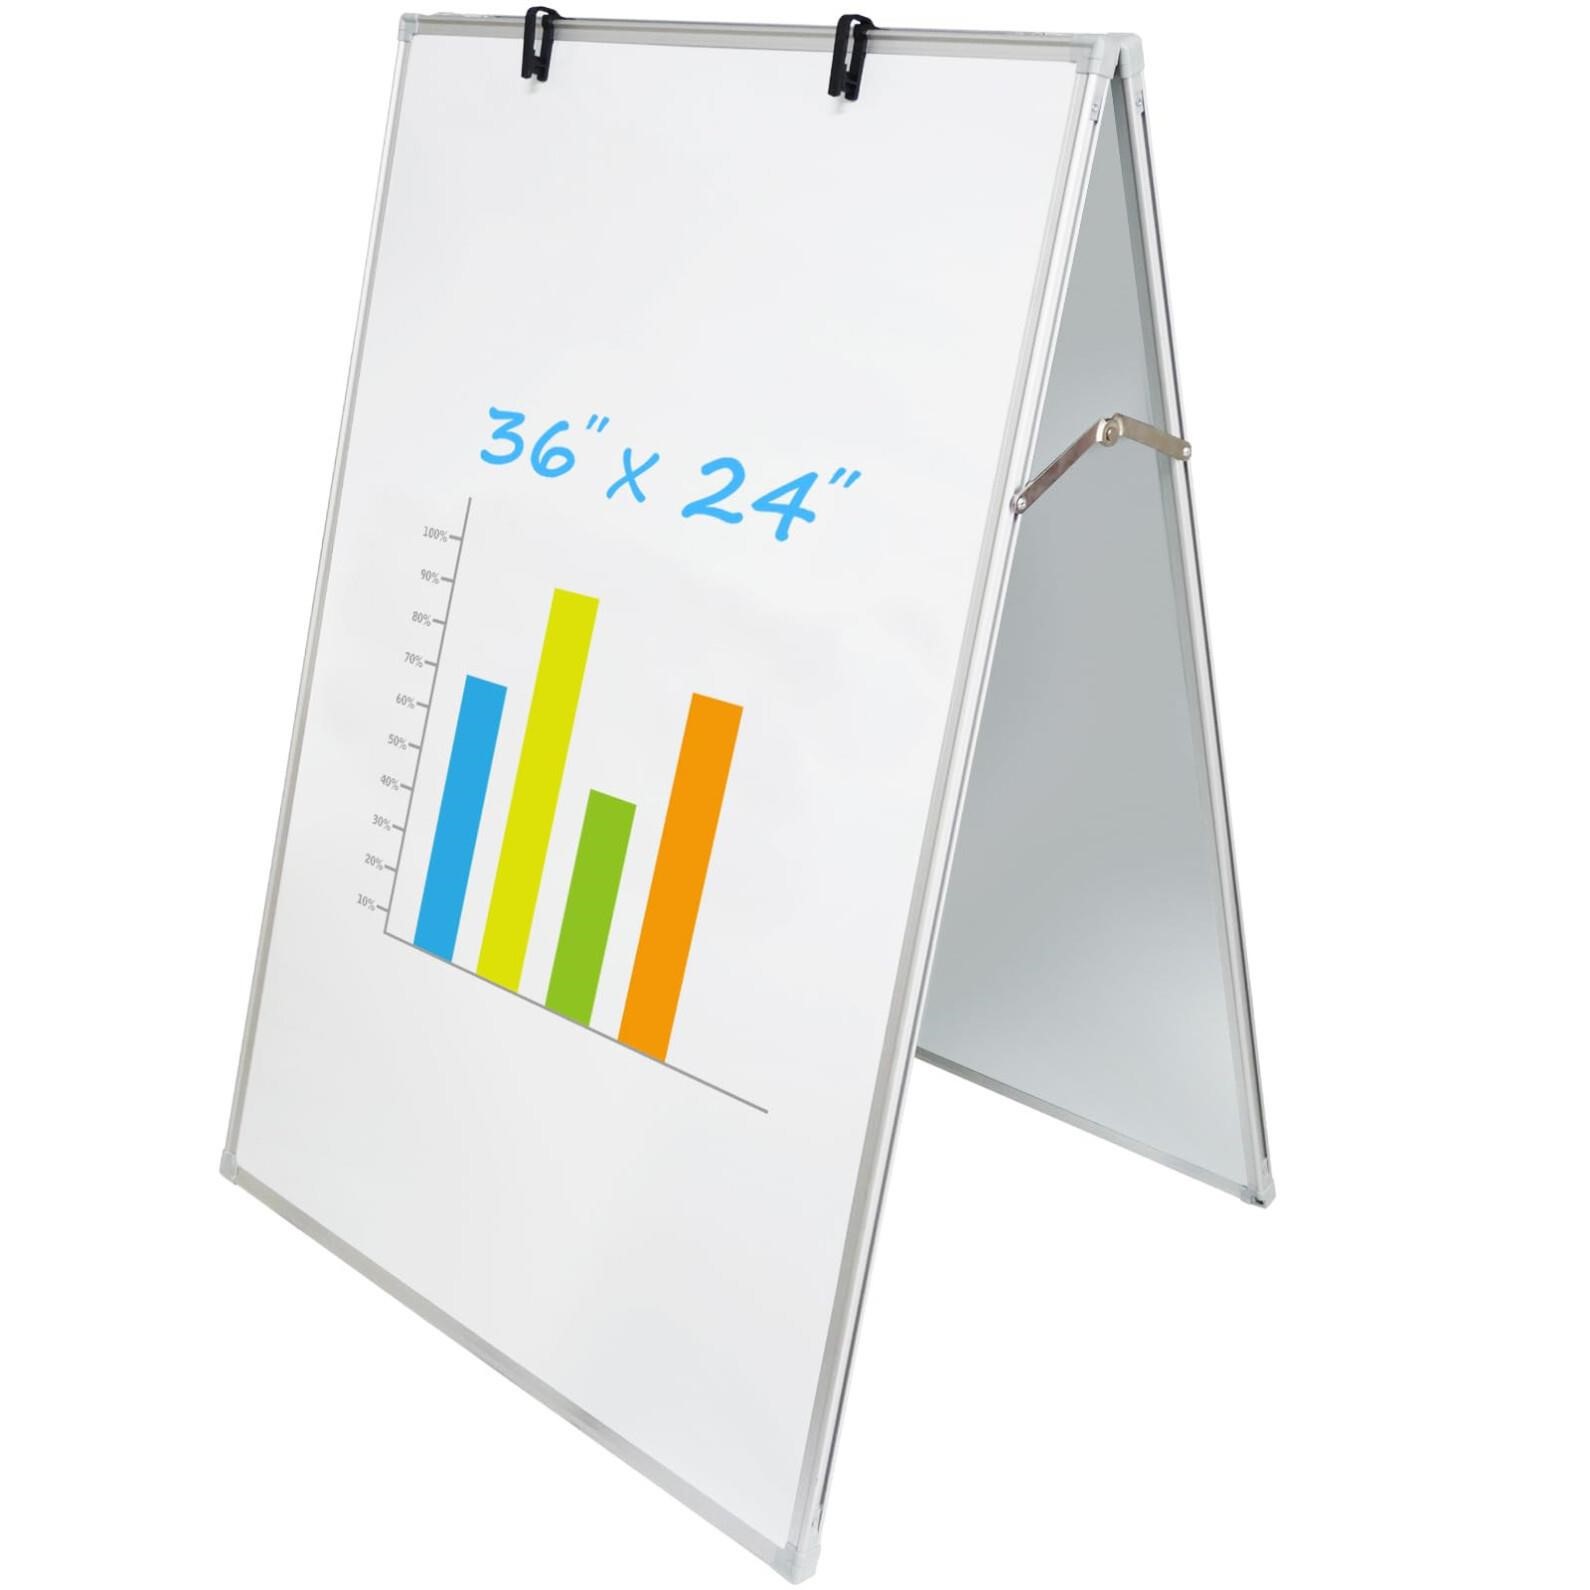 JILoffice Dry Erase Board, Magnetic White Board 36